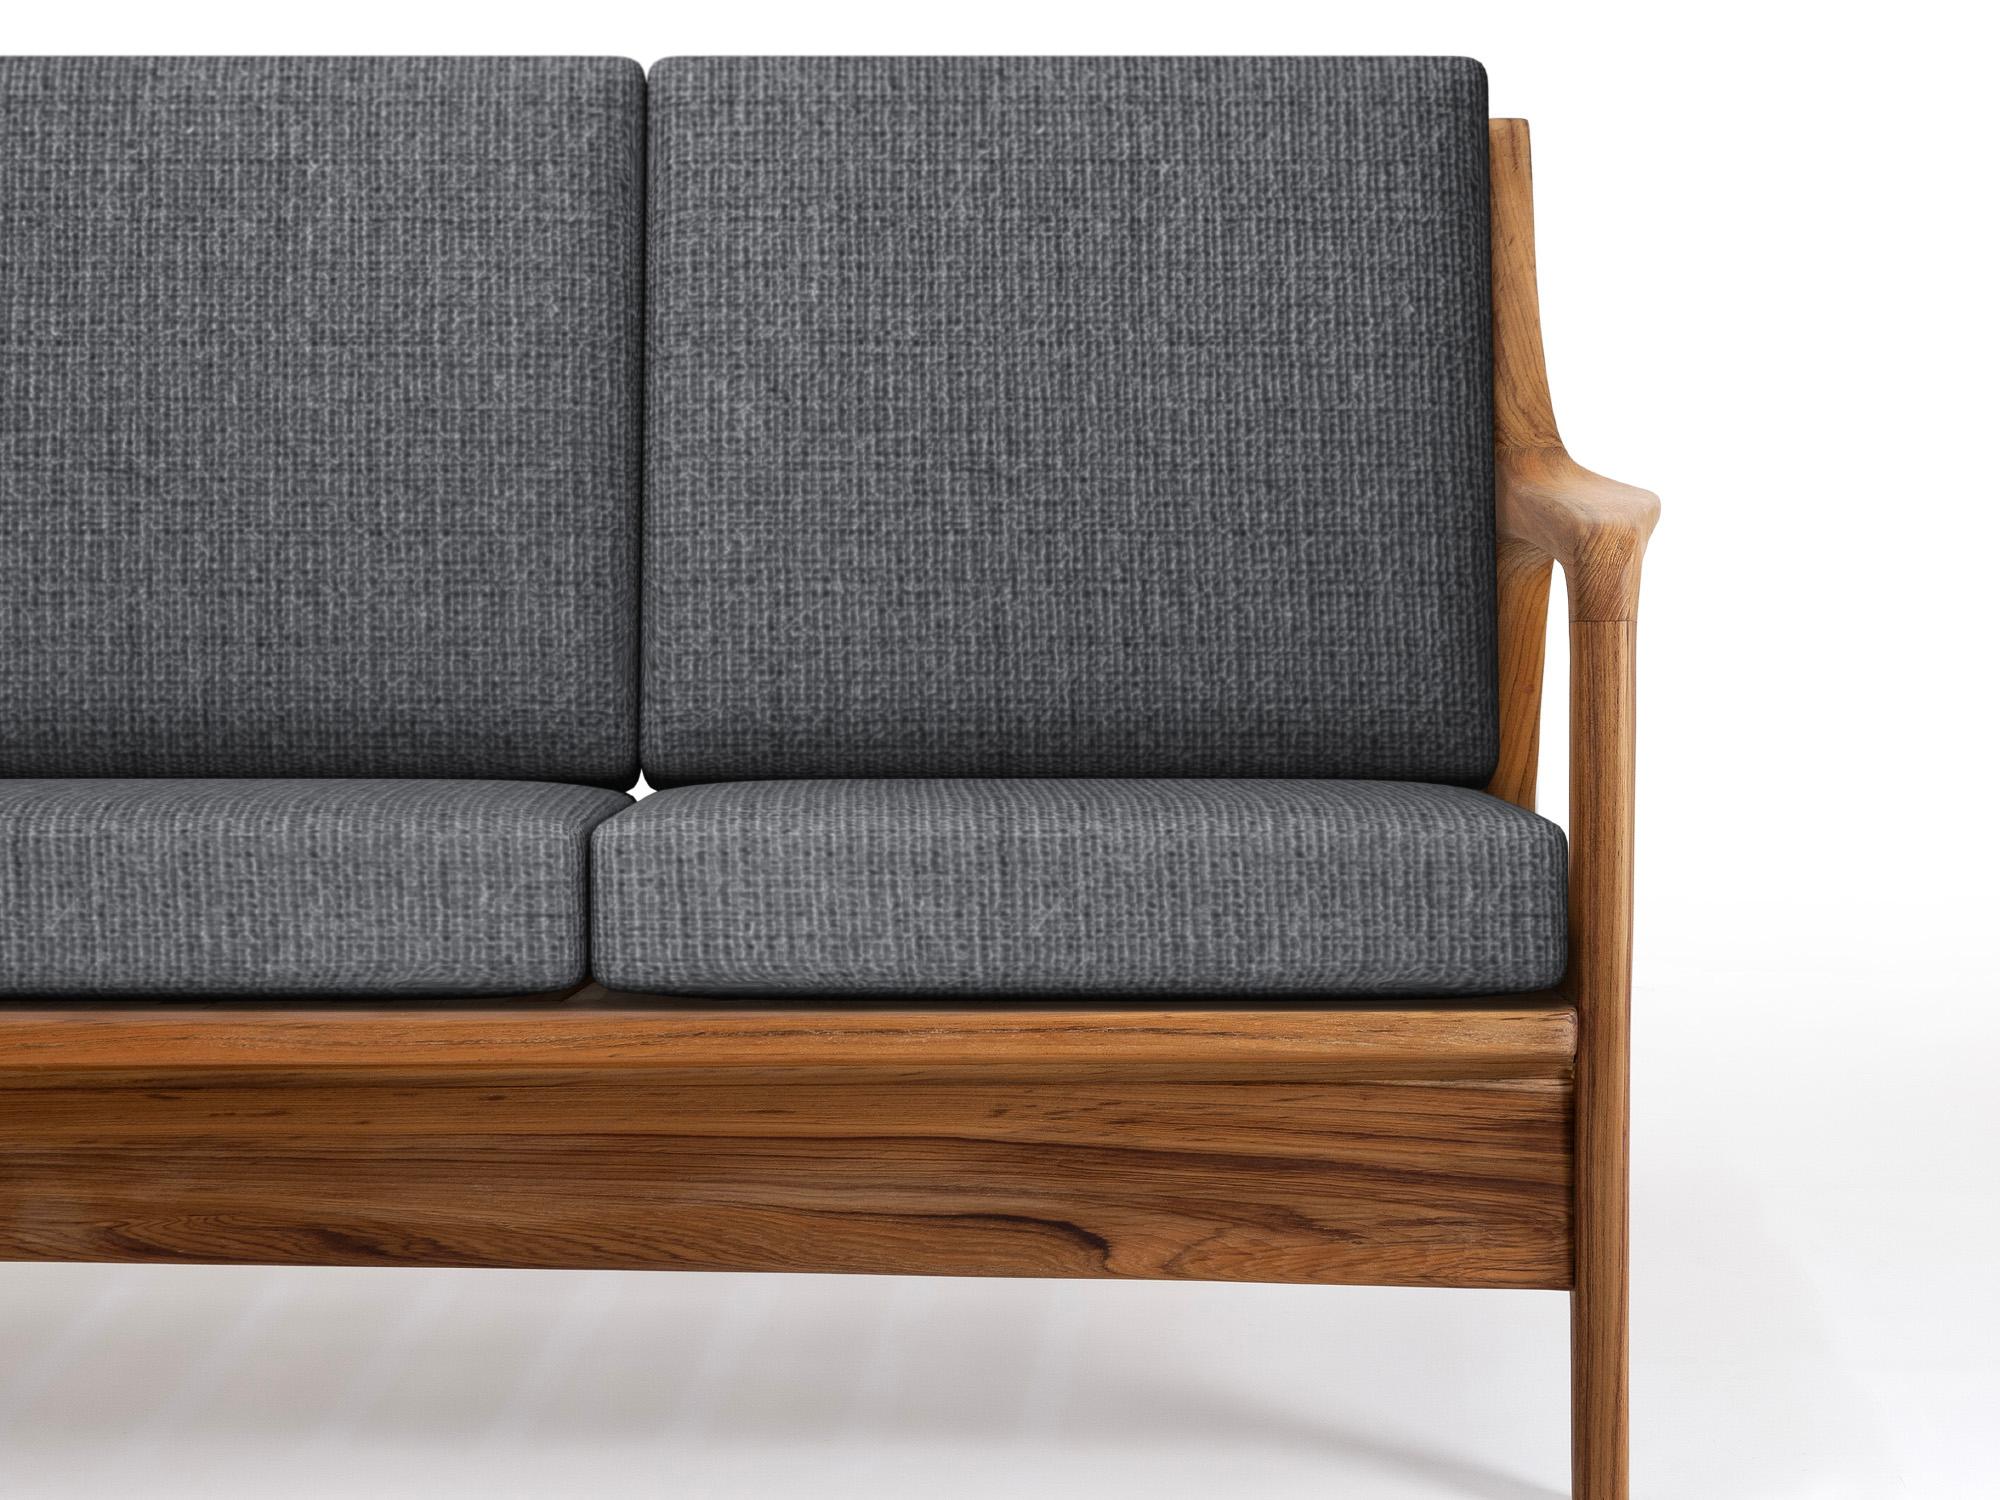 Le canapé d'extérieur/indoor est conçu dans le style des meubles modernes du milieu du siècle, au lieu des modèles typiquement bloqués et inconfortables disponibles. La stature musclée et la robustesse de la menuiserie sont équilibrées par les